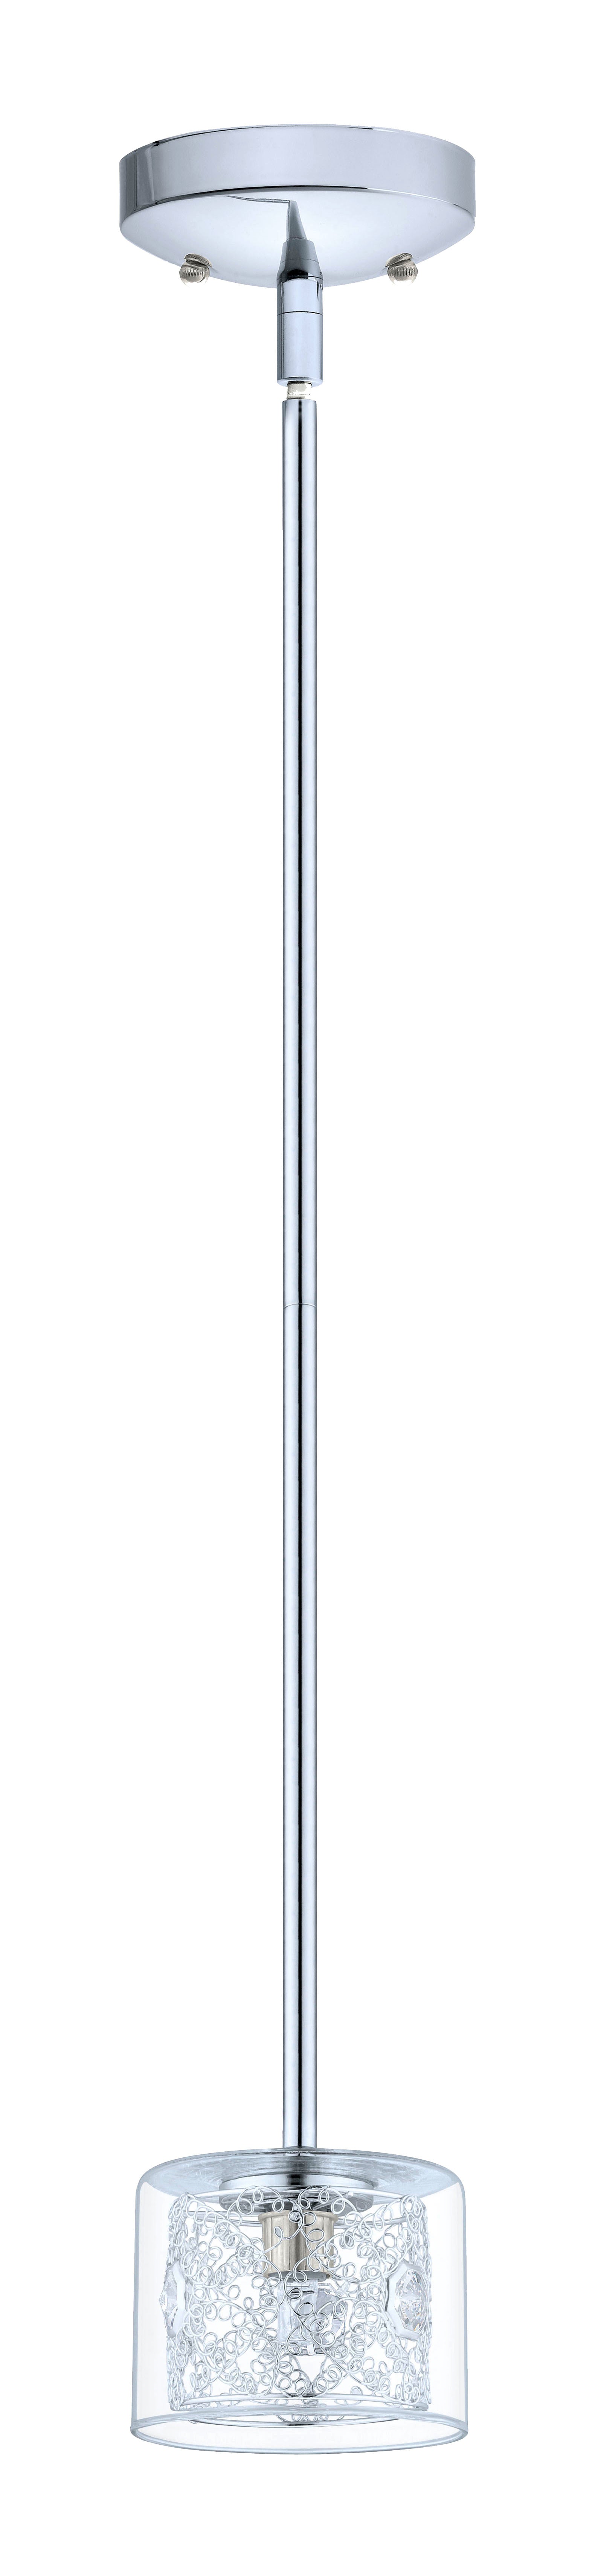 Pianella Suspension simple Chrome, Cristal - 200268A | EGLO